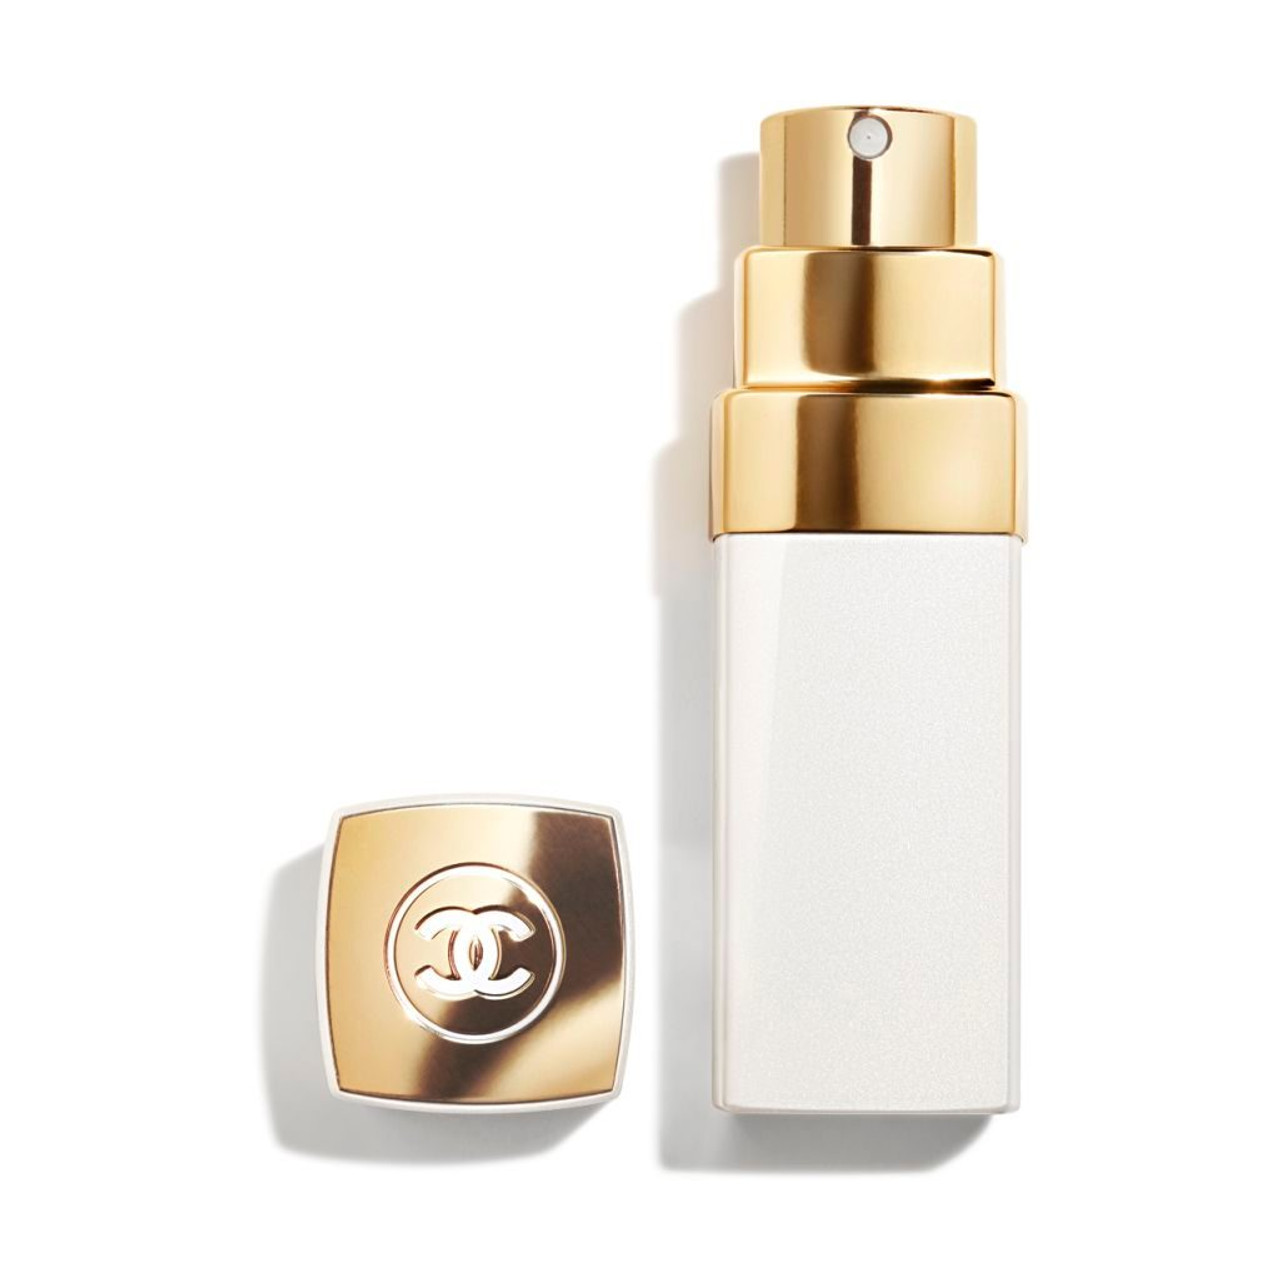 Chanel Coco Mademoiselle Eau de Parfum 3.4 fl. - Depop